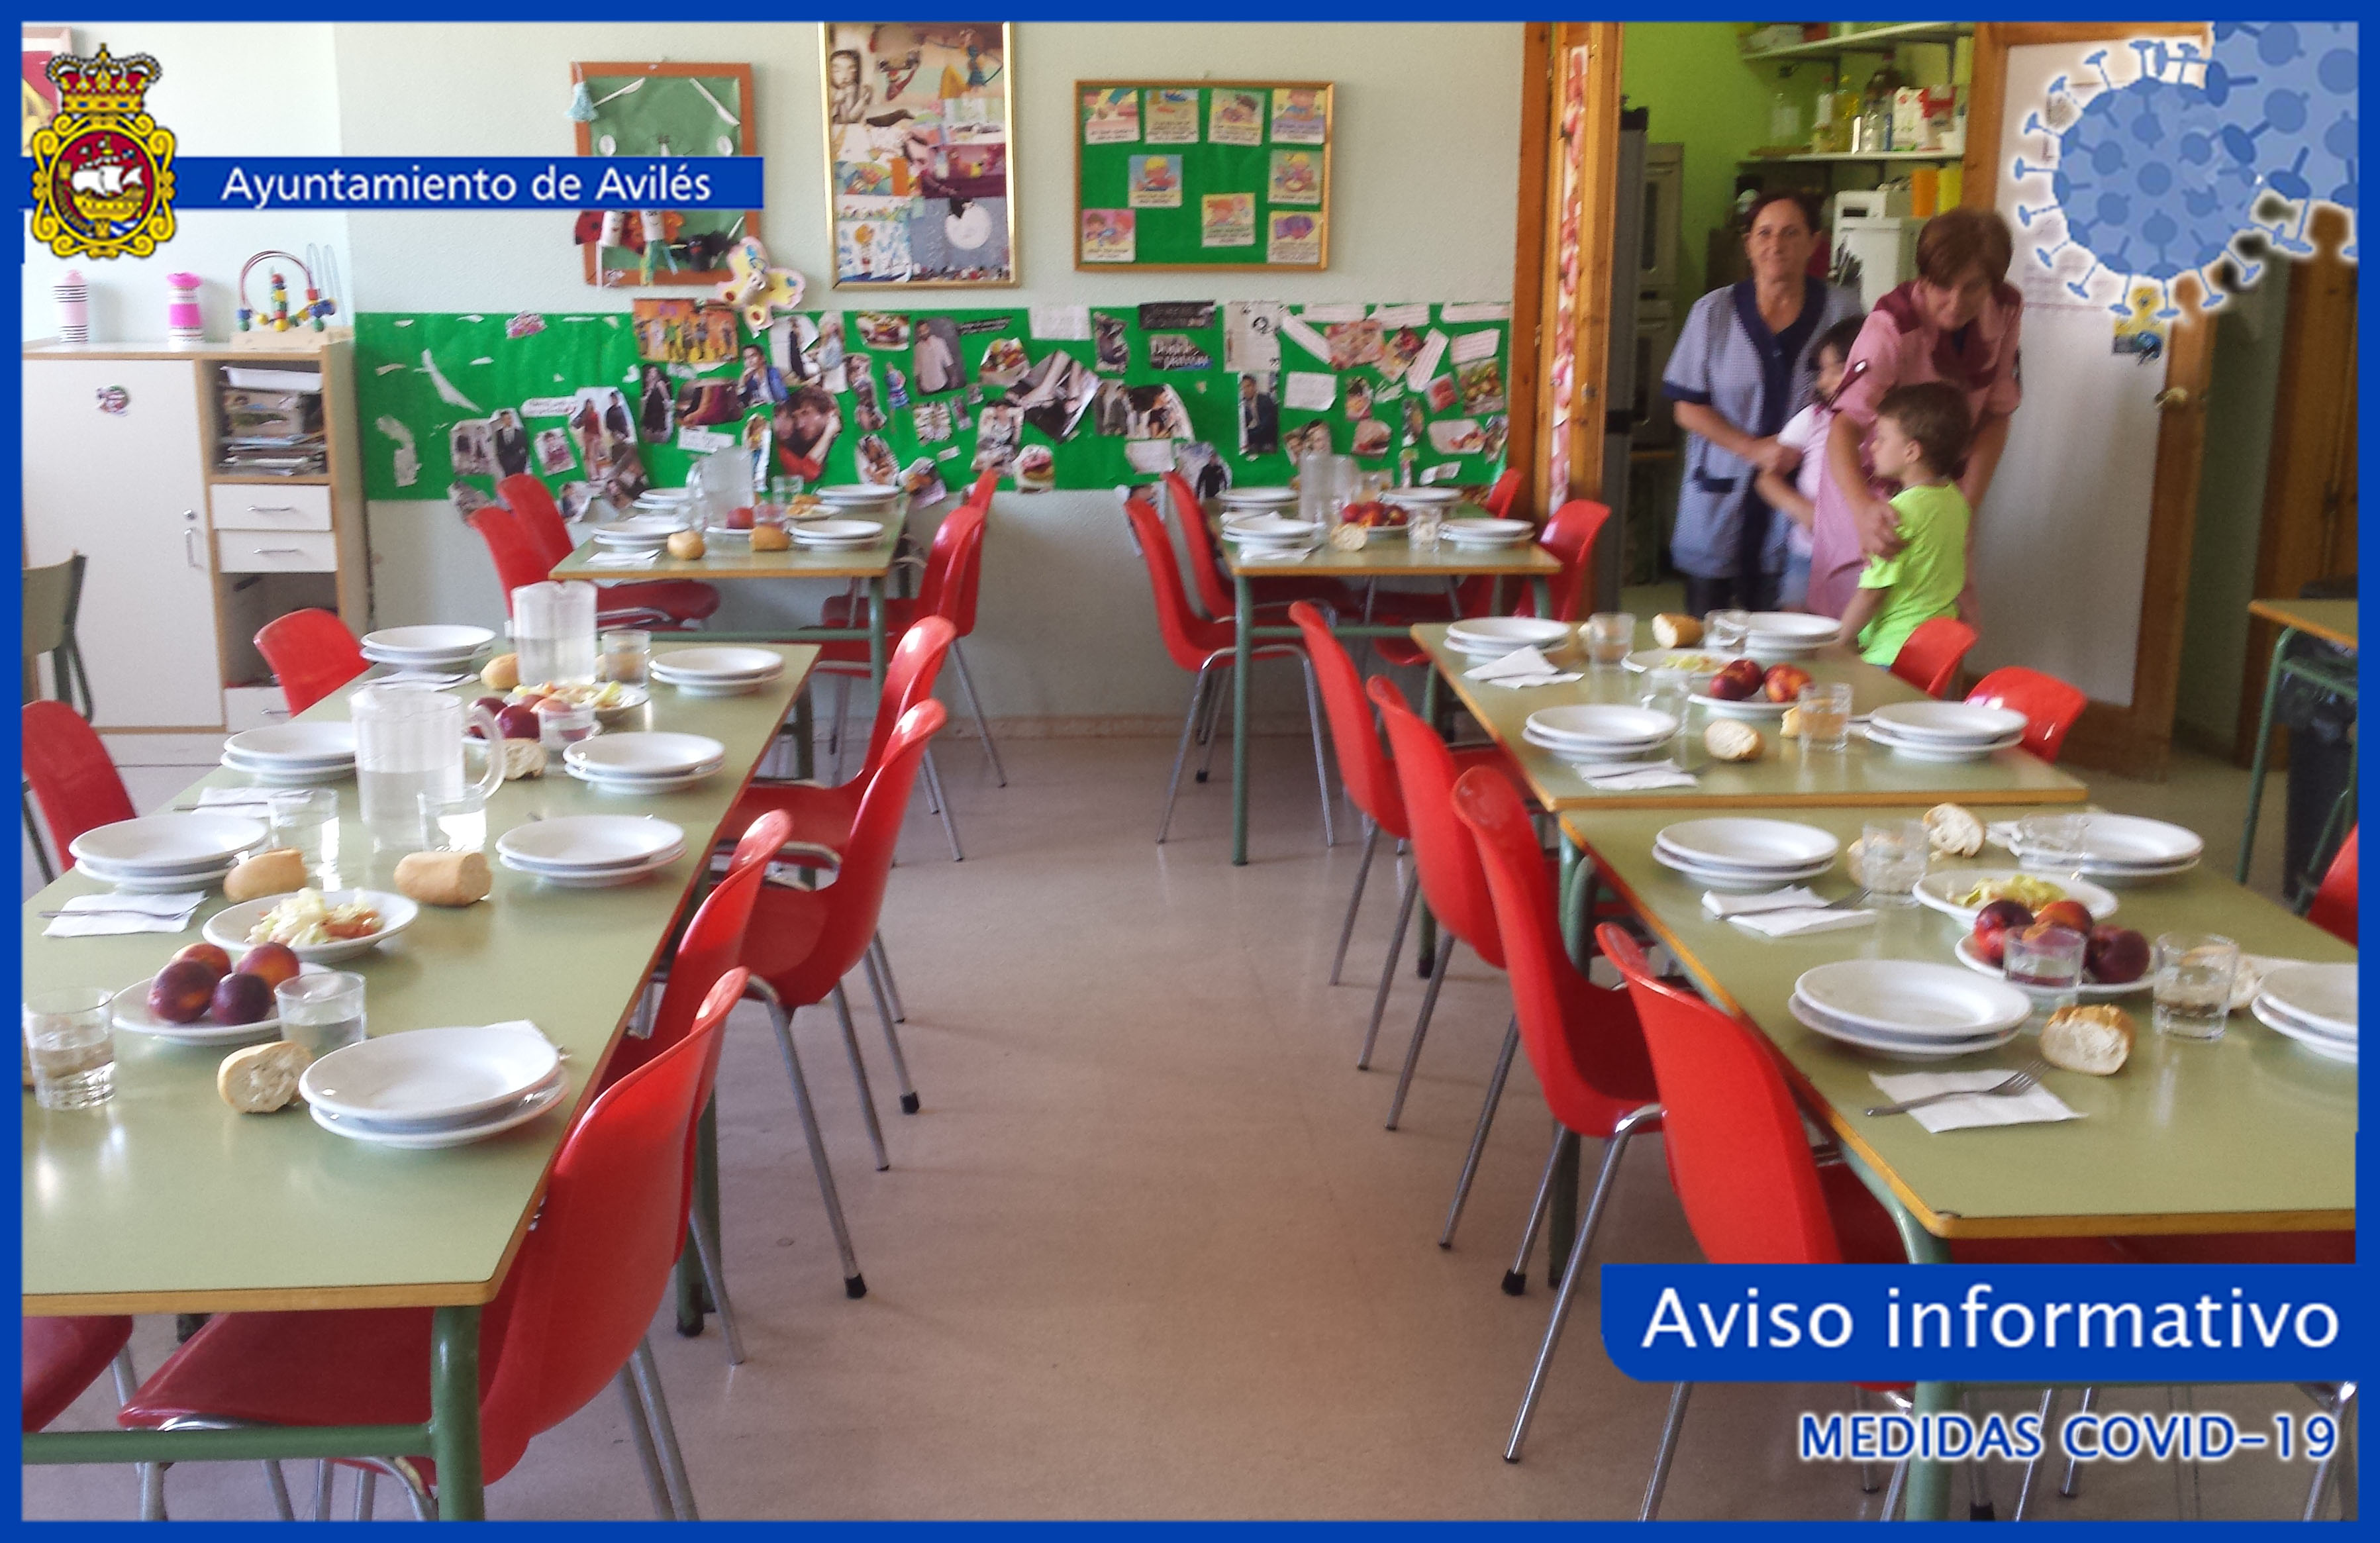 La alcaldesa decreta el pago directo de ayudas a 366 familias beneficiarias de bonificaciones en comedores escolares